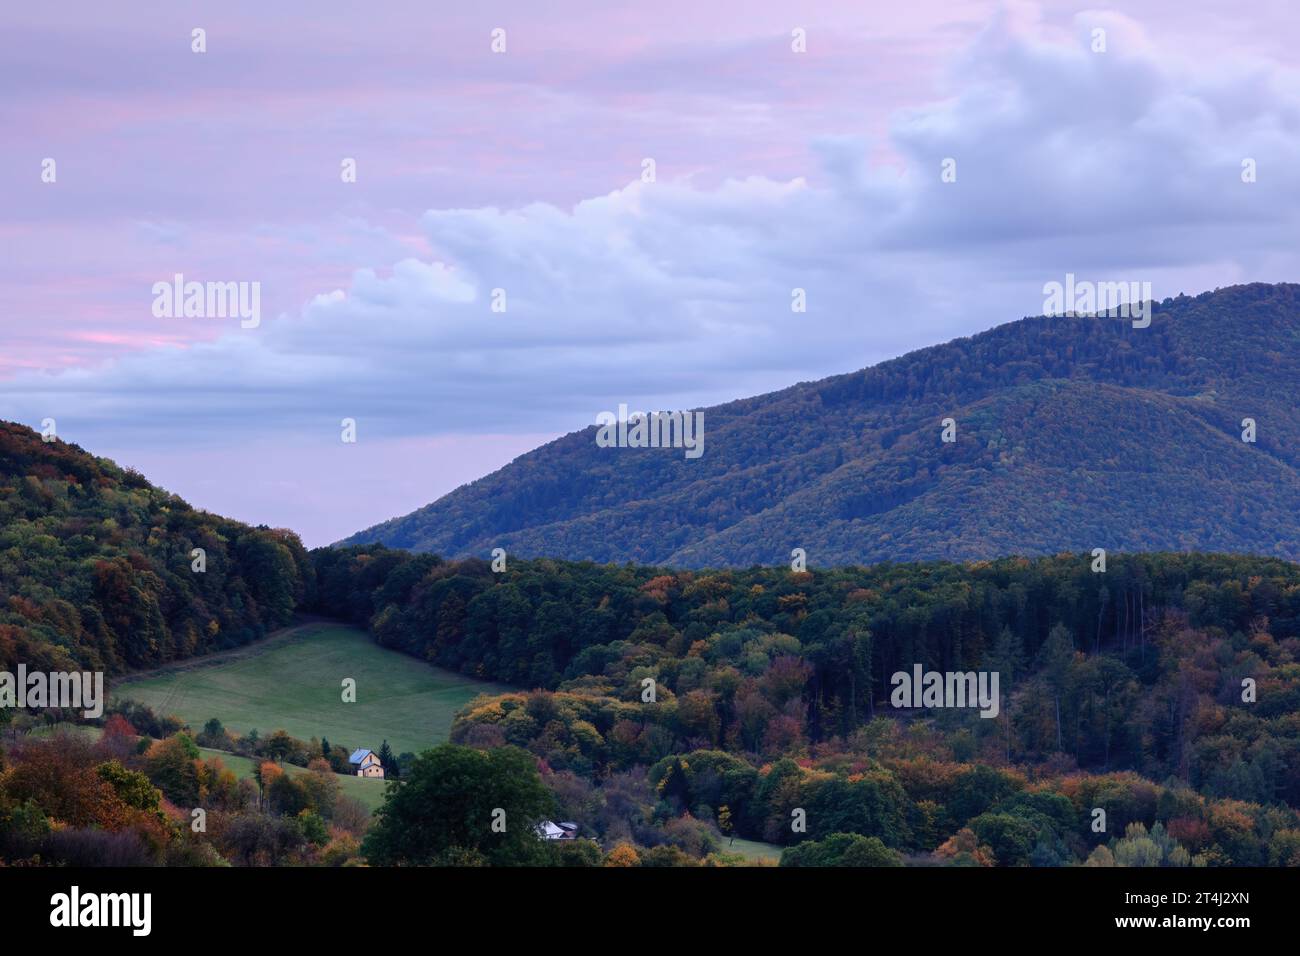 Herbst ländliche Landschaft mit Wald und einsamem Haus bei Sonnenuntergang. Bunte Bäume. Schöner rosa Himmel mit großer weißer Wolke. Horna Suca, Dubrava, Slowakei Stockfoto